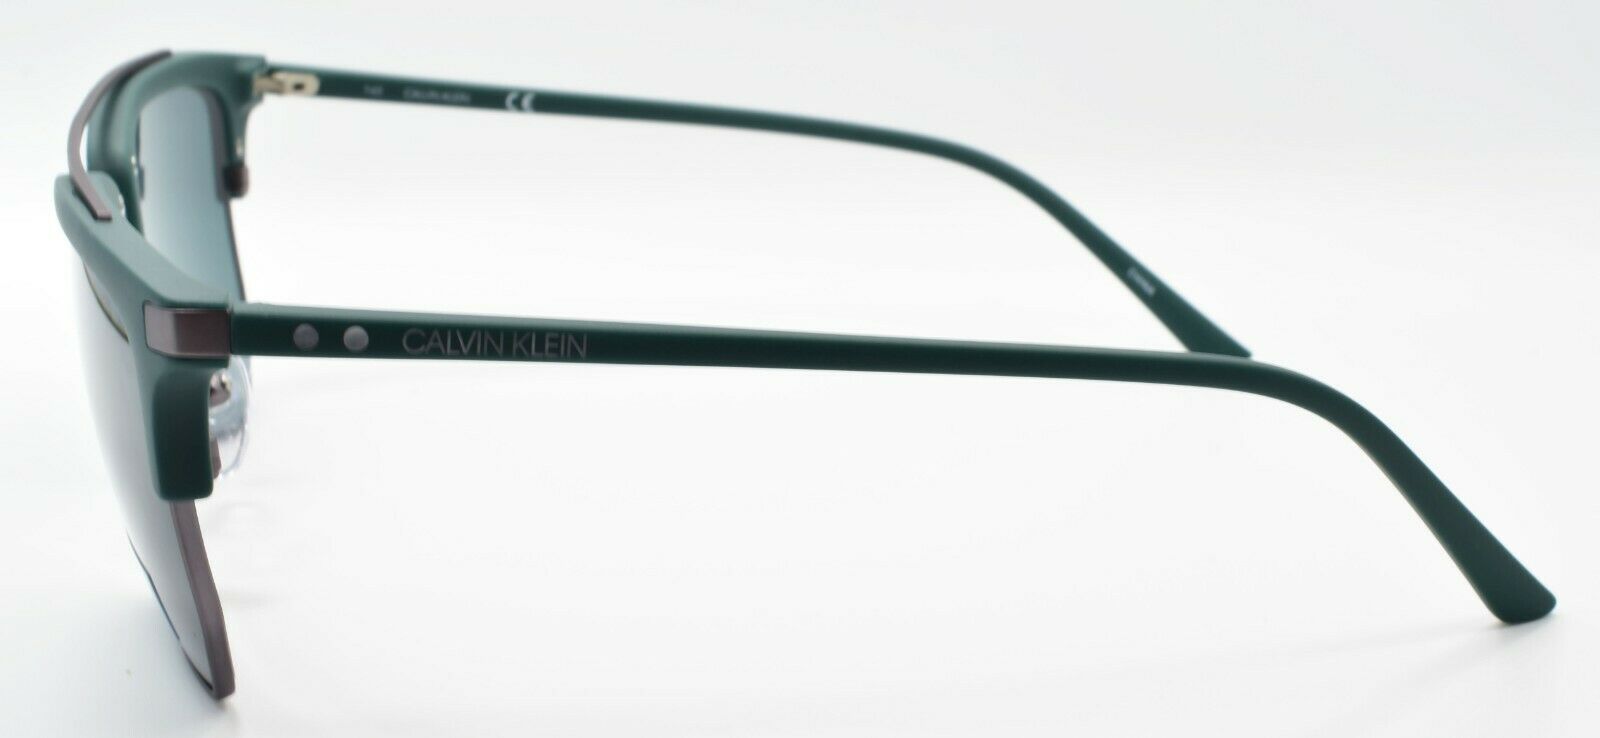 3-Calvin Klein CK19301S 307 Men's Sunglasses Aviator 54-18-140 Green / Green-883901114089-IKSpecs